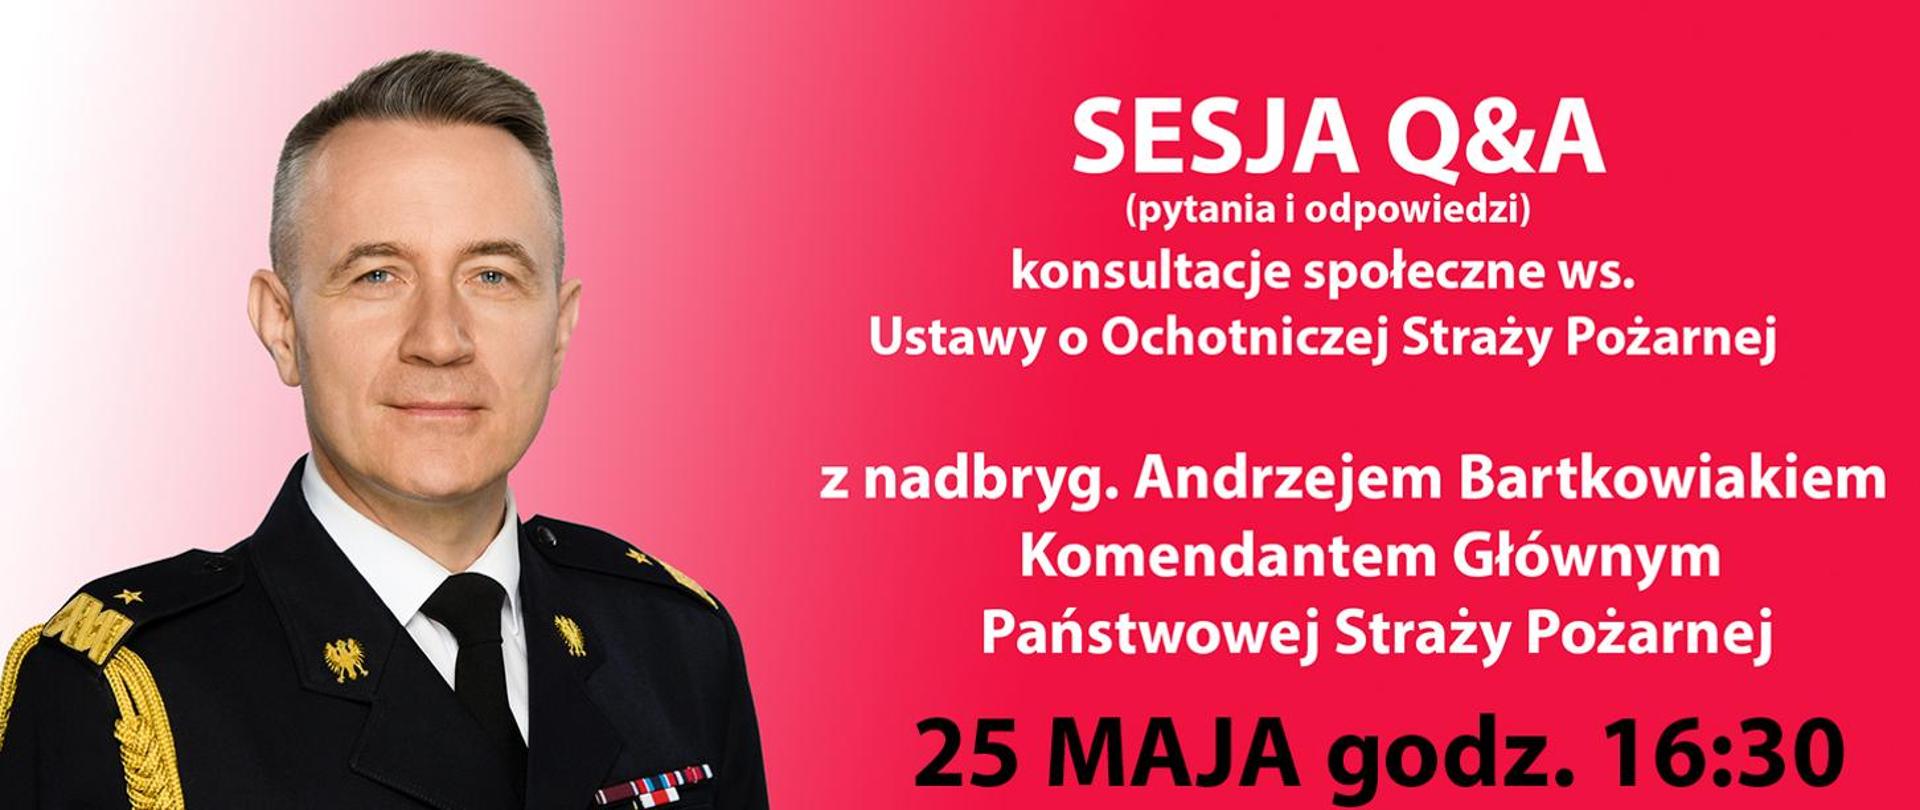 Baner - zapowiedź sesji Q&A (pytania i odpowiedzi), po lewej stronie baneru zdjęcie Komendanta Bartkowiaka